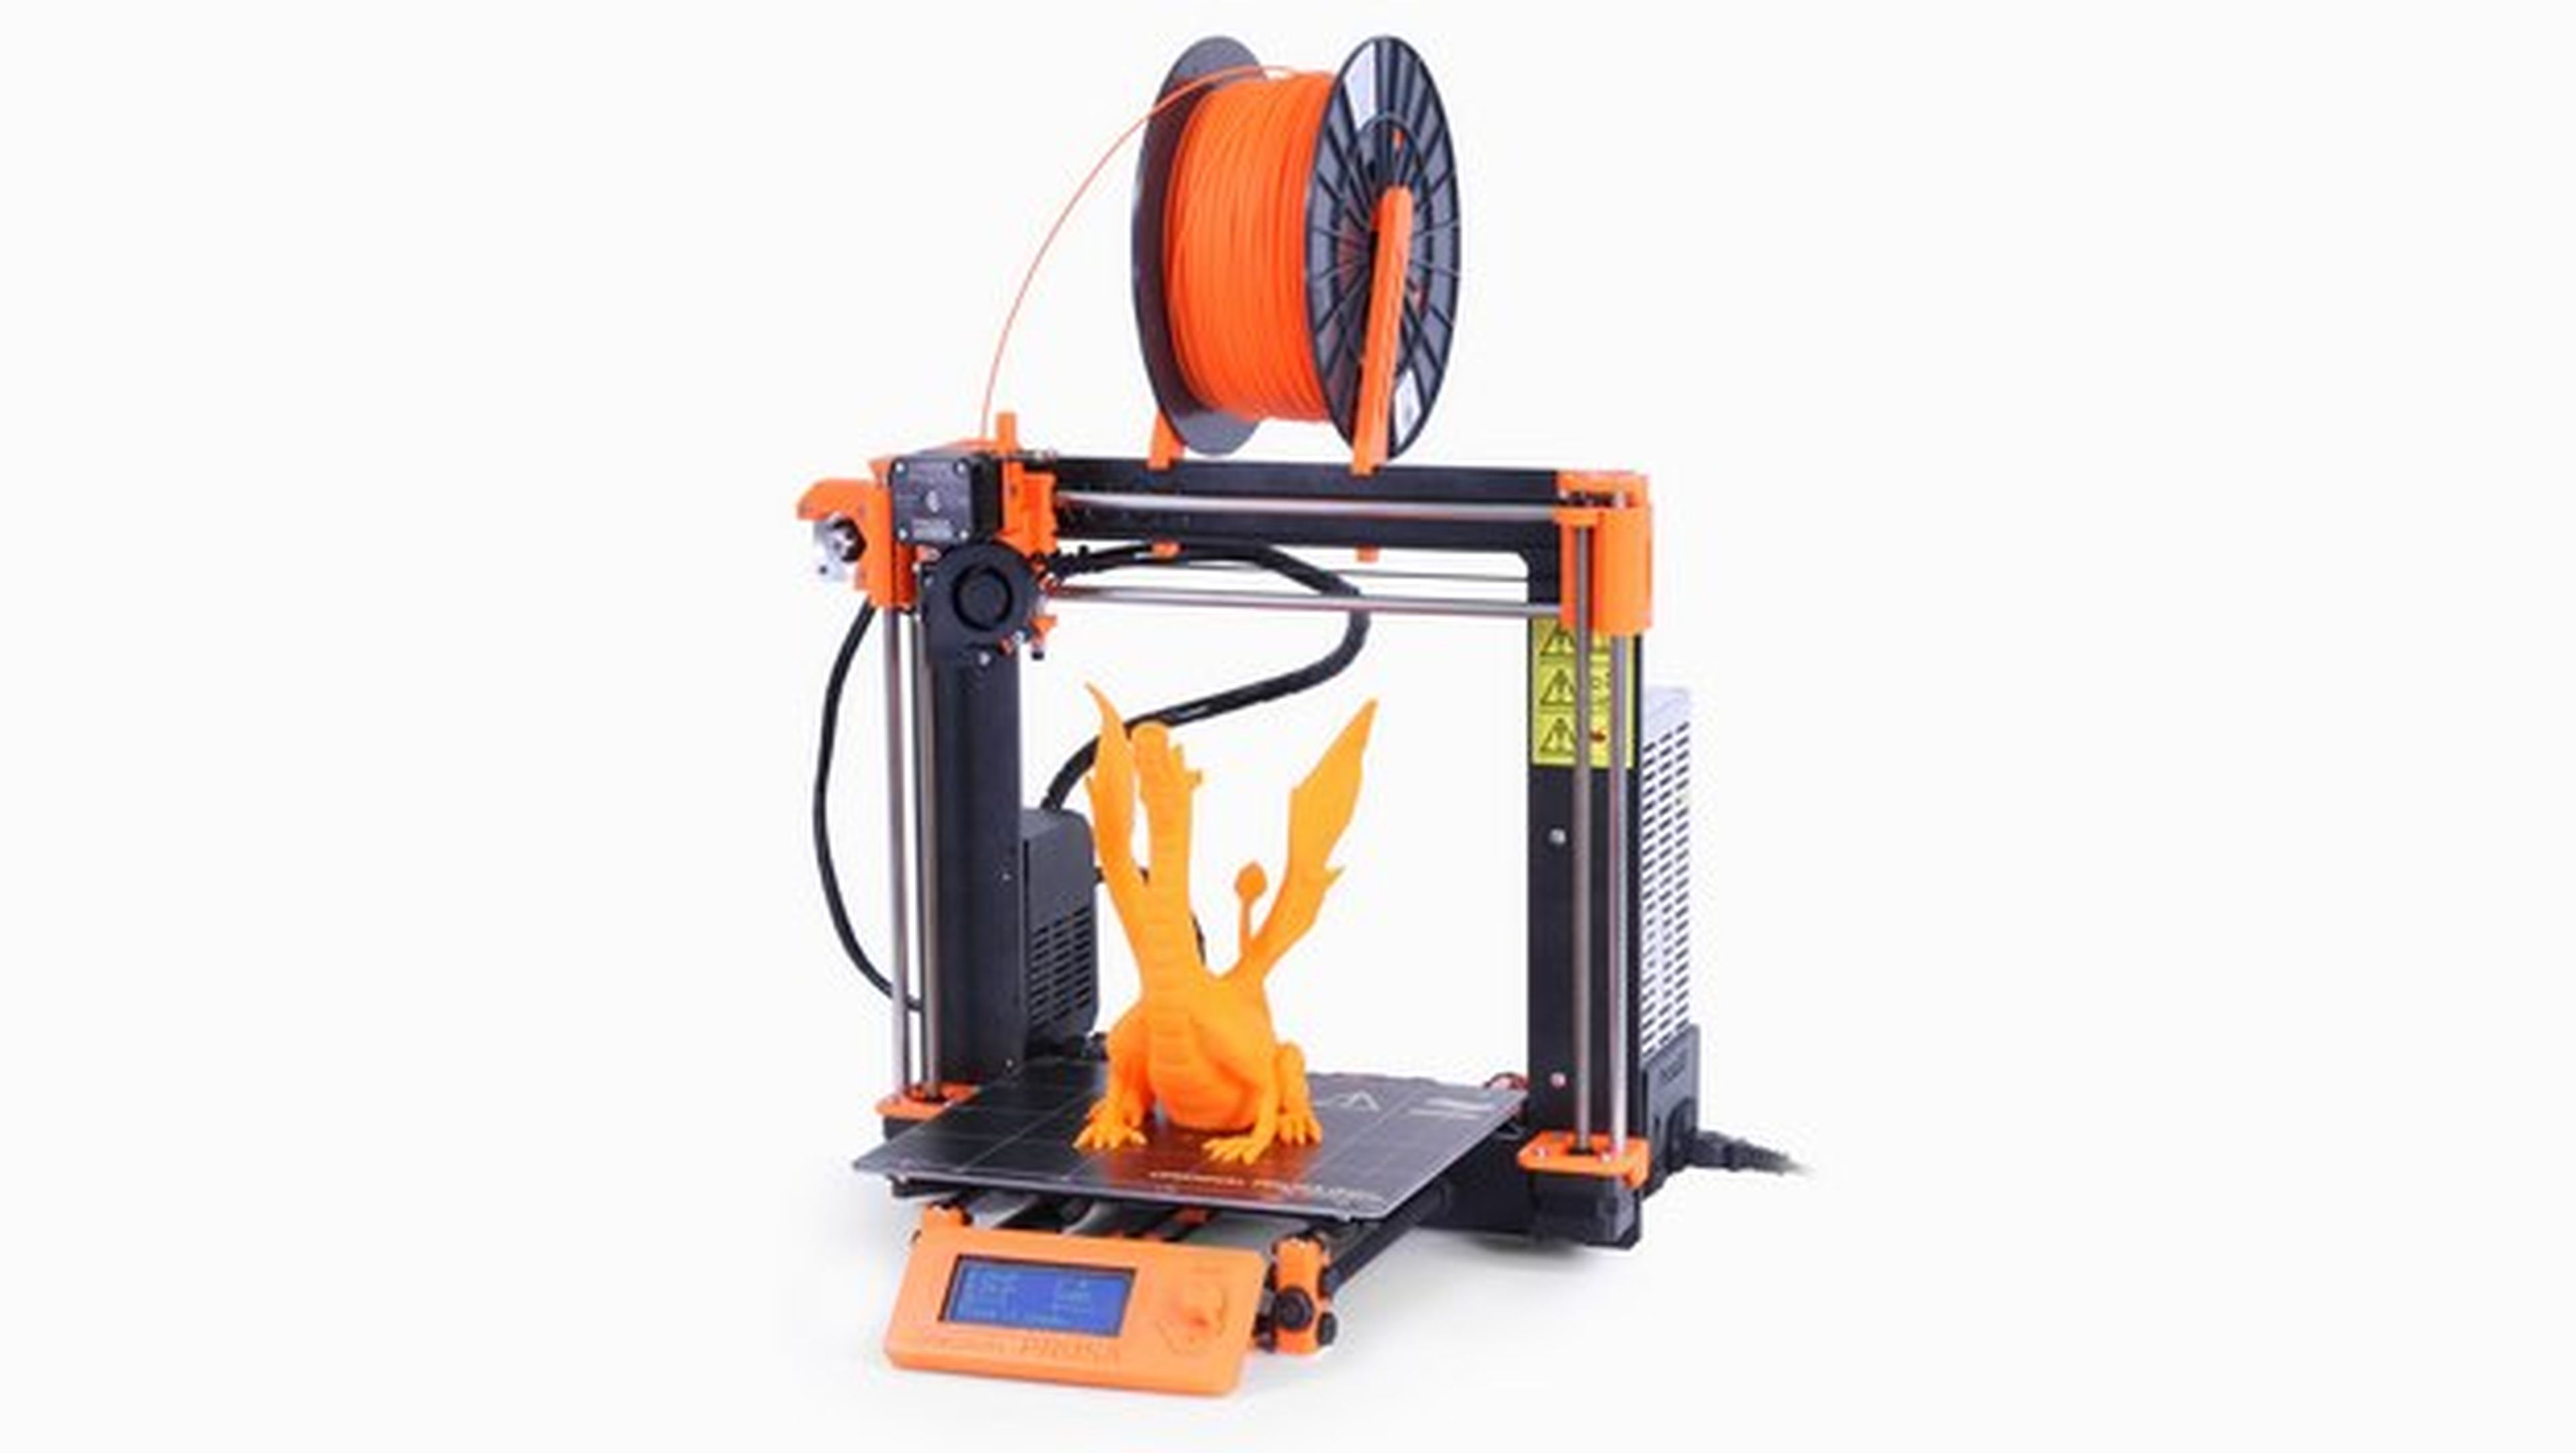 Impresora 3D Prusa i3